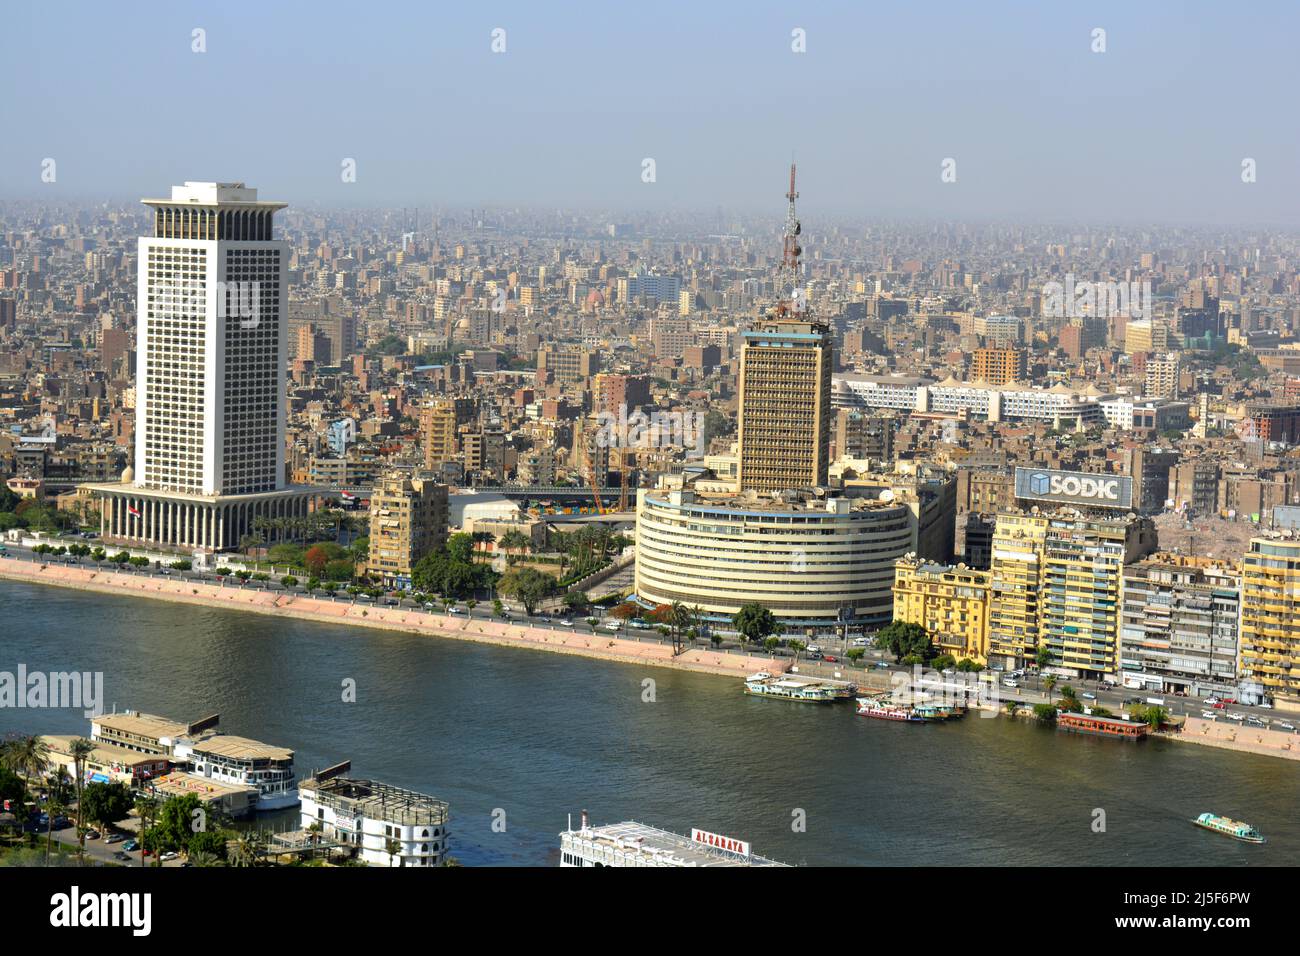 Cairo, Egitto, maggio 18 2018: Vista aerea dello skyline della città del Cairo sulla riva del Nilo con radio egiziana e la televisione edificio sulla destra e minis Foto Stock